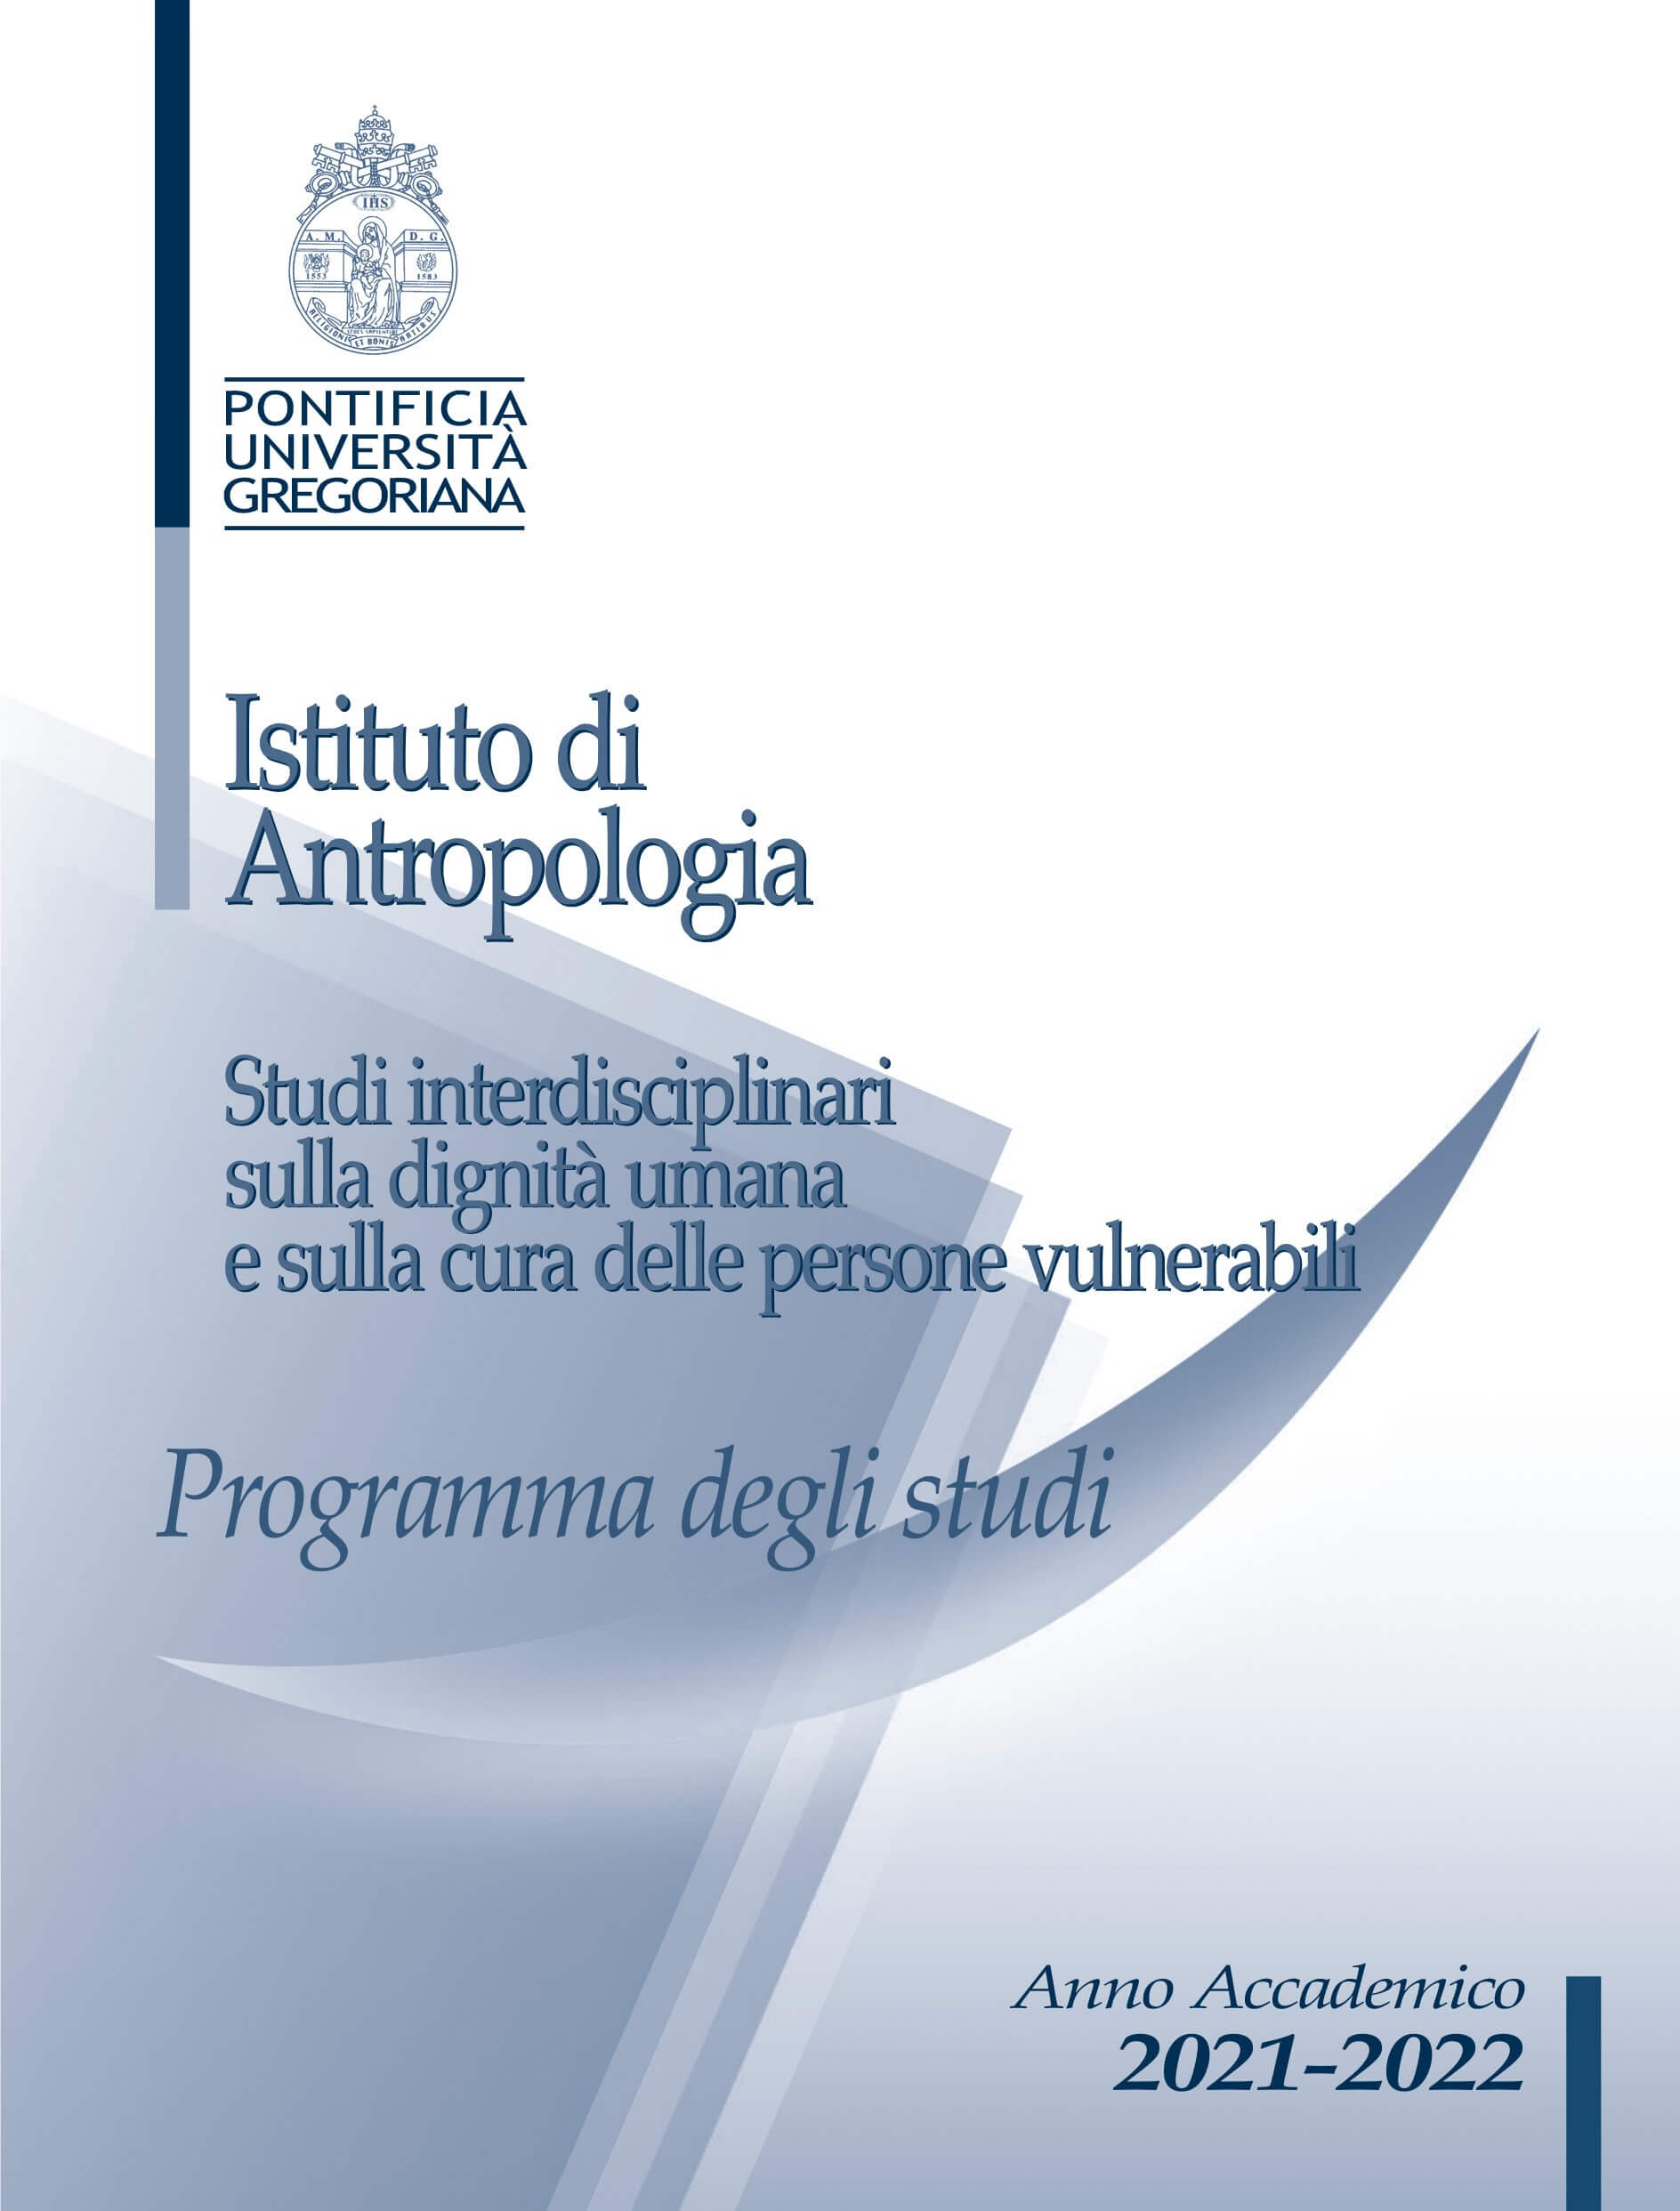 Istituto di Antropologia